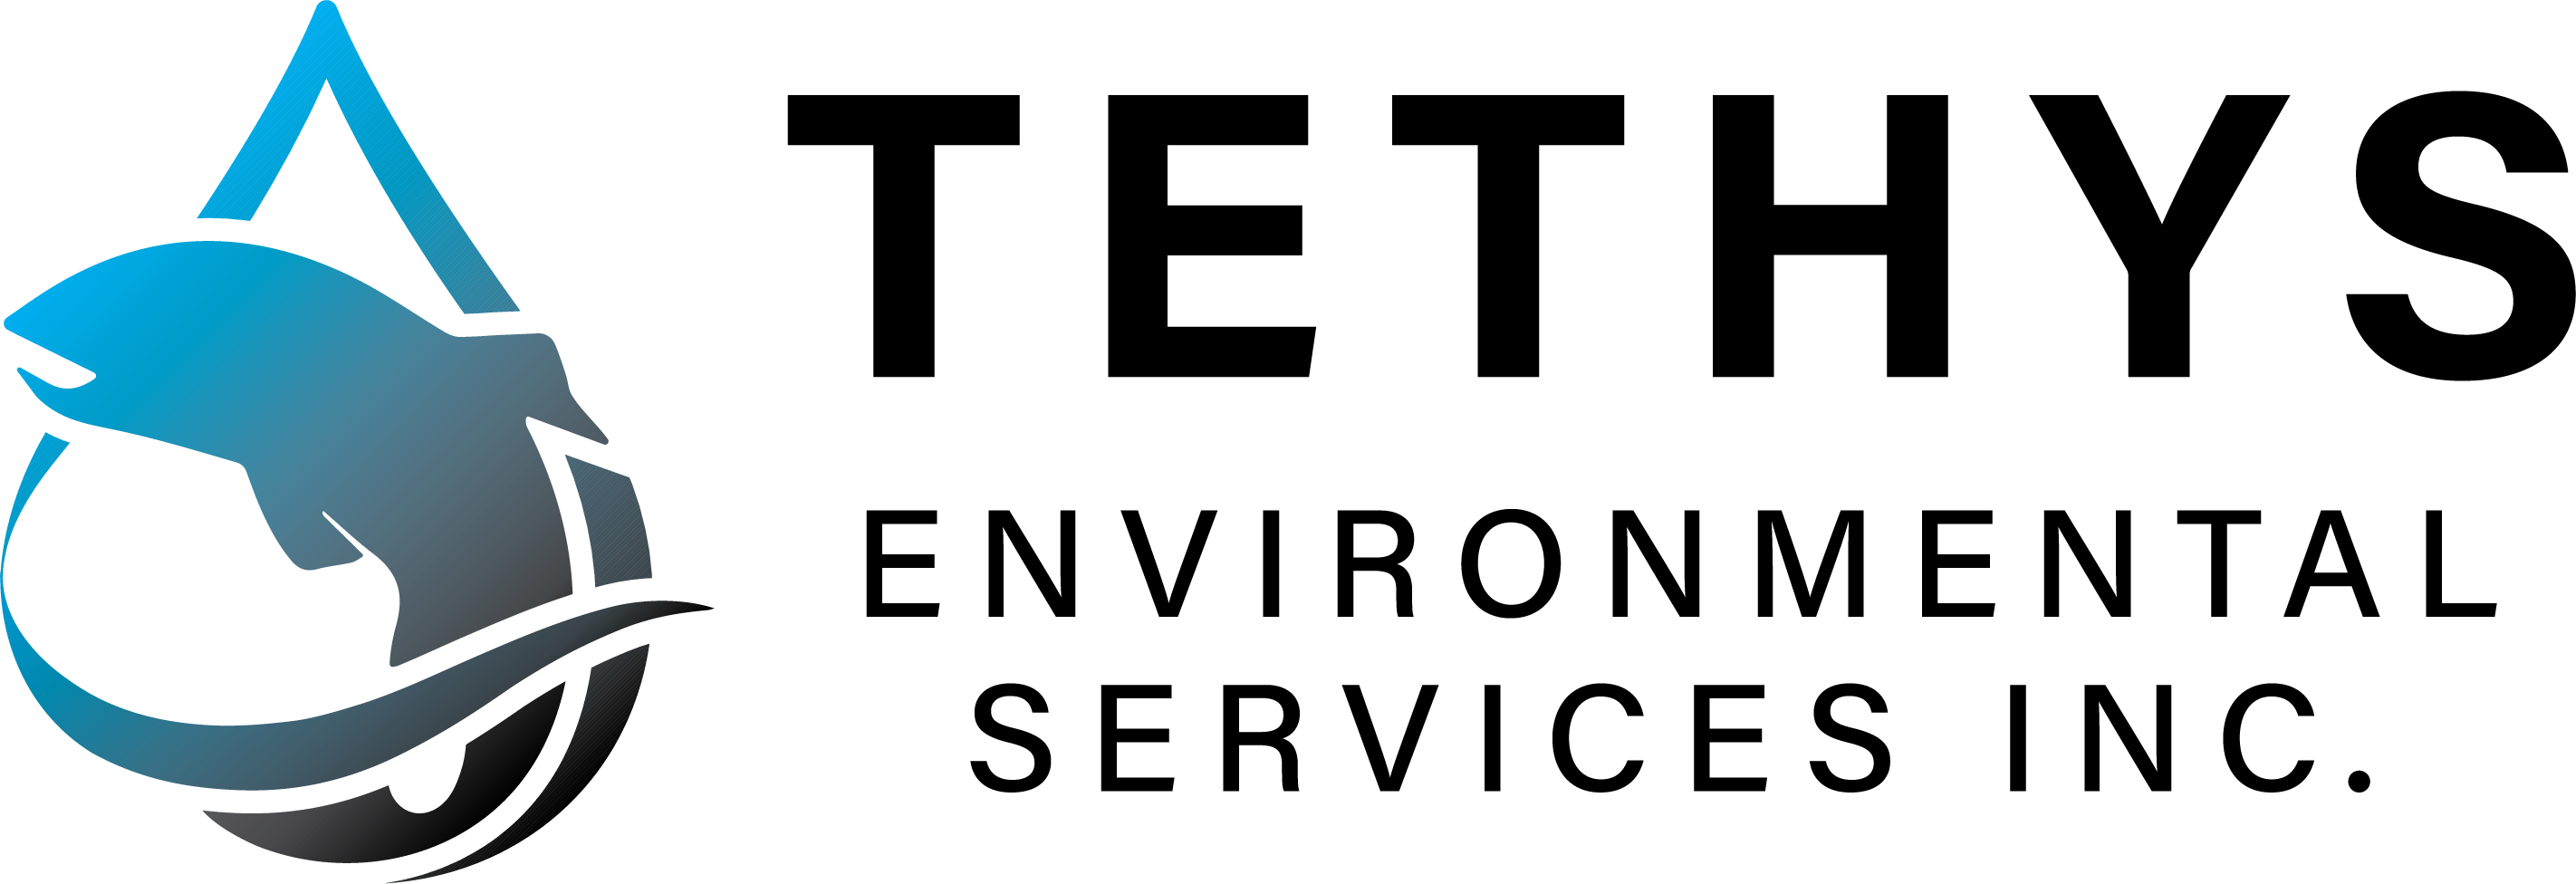 Tethys Environmental Services Inc. logo